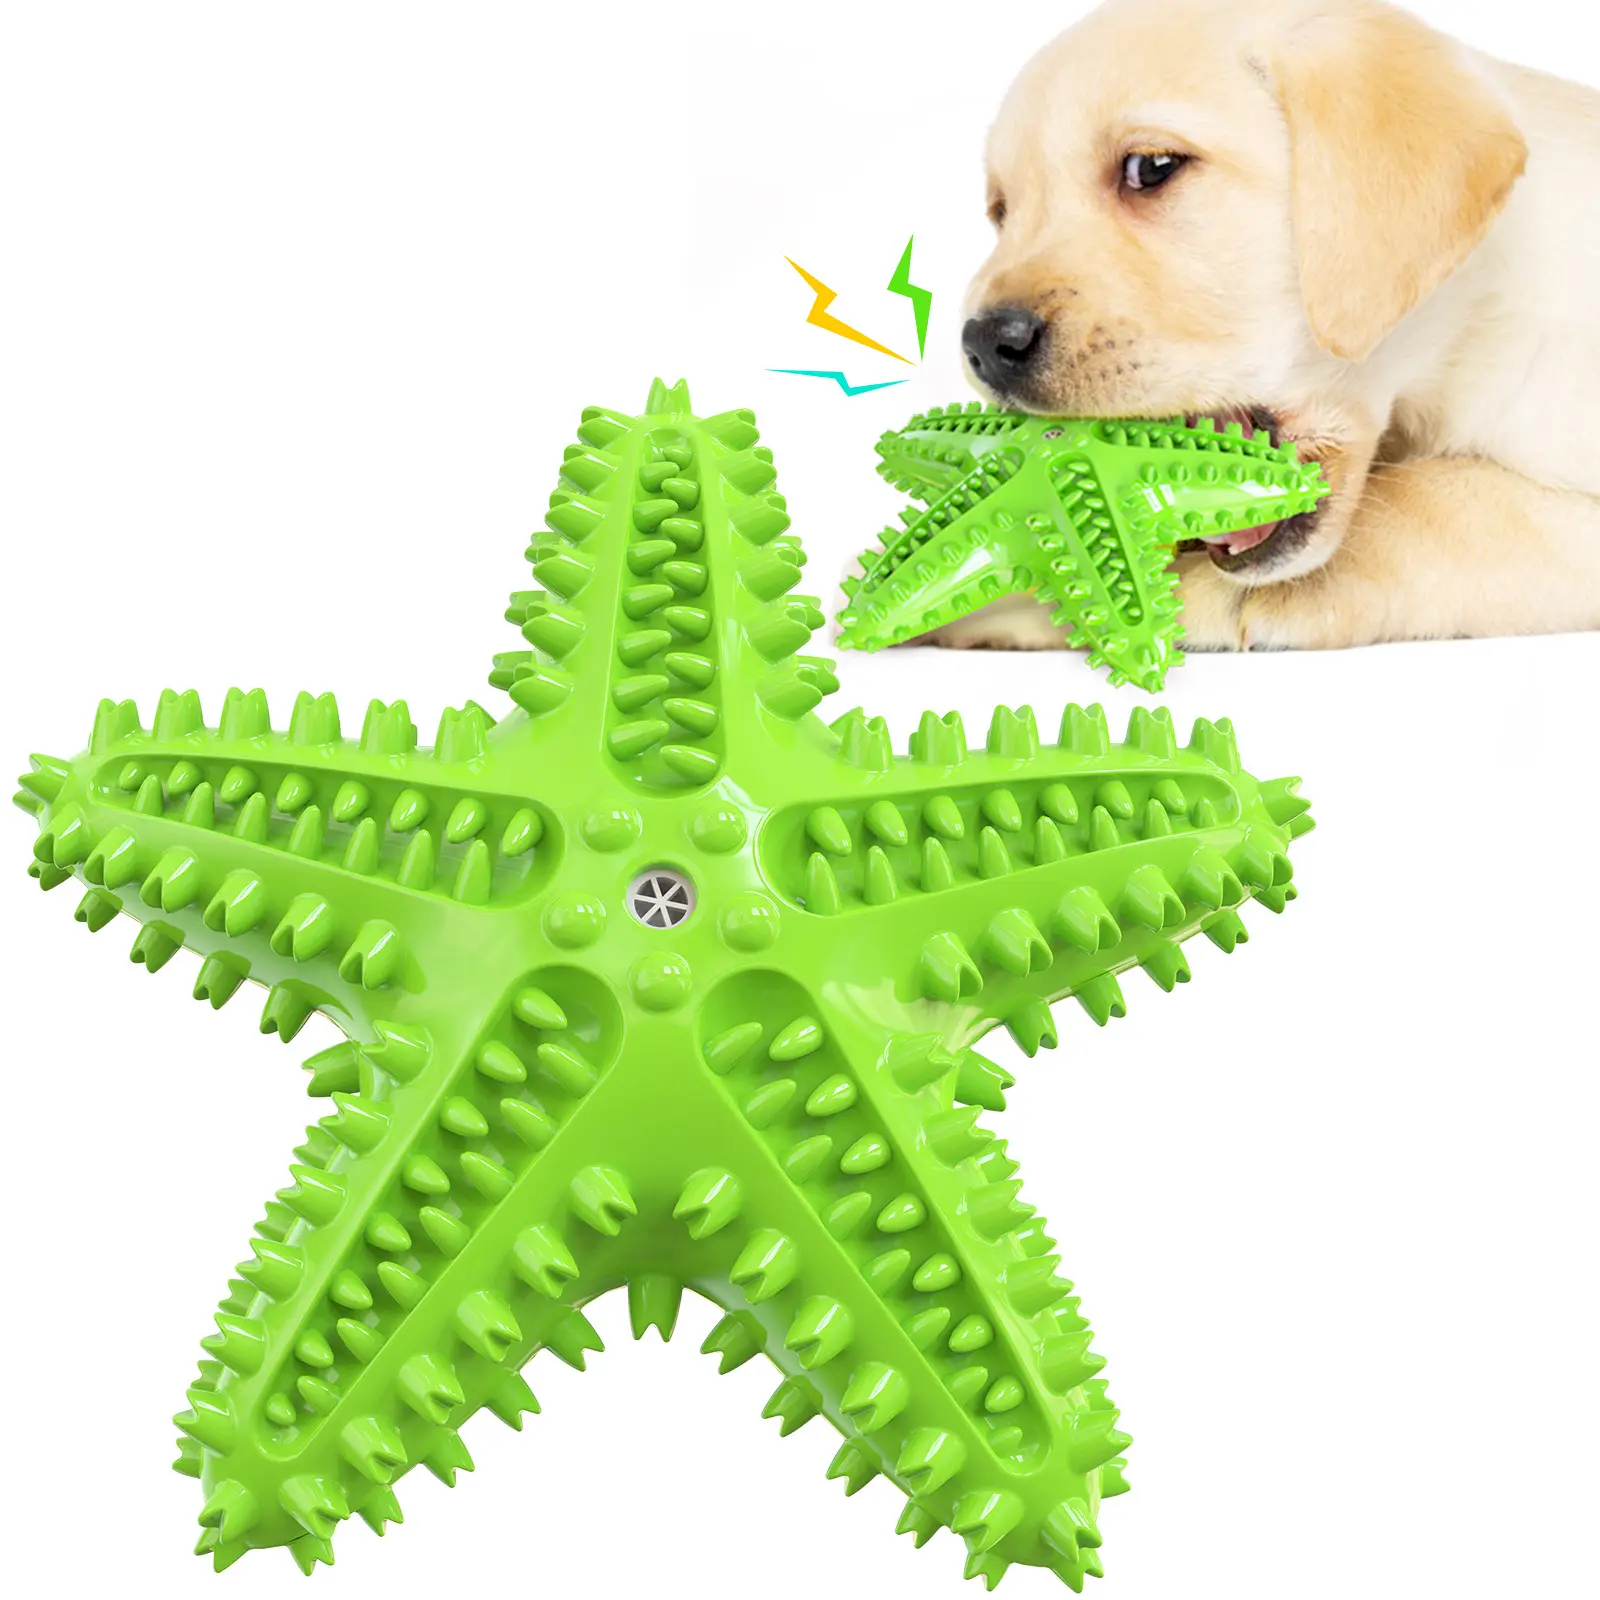 अमेज़न गर्म बेच पालतू जानवर की दुकान TPR रबर स्टारफिश आकार का कुत्ता खिलौना चबाना सफाई दांत ब्रश लग चीख़ कुत्ते के खिलौने